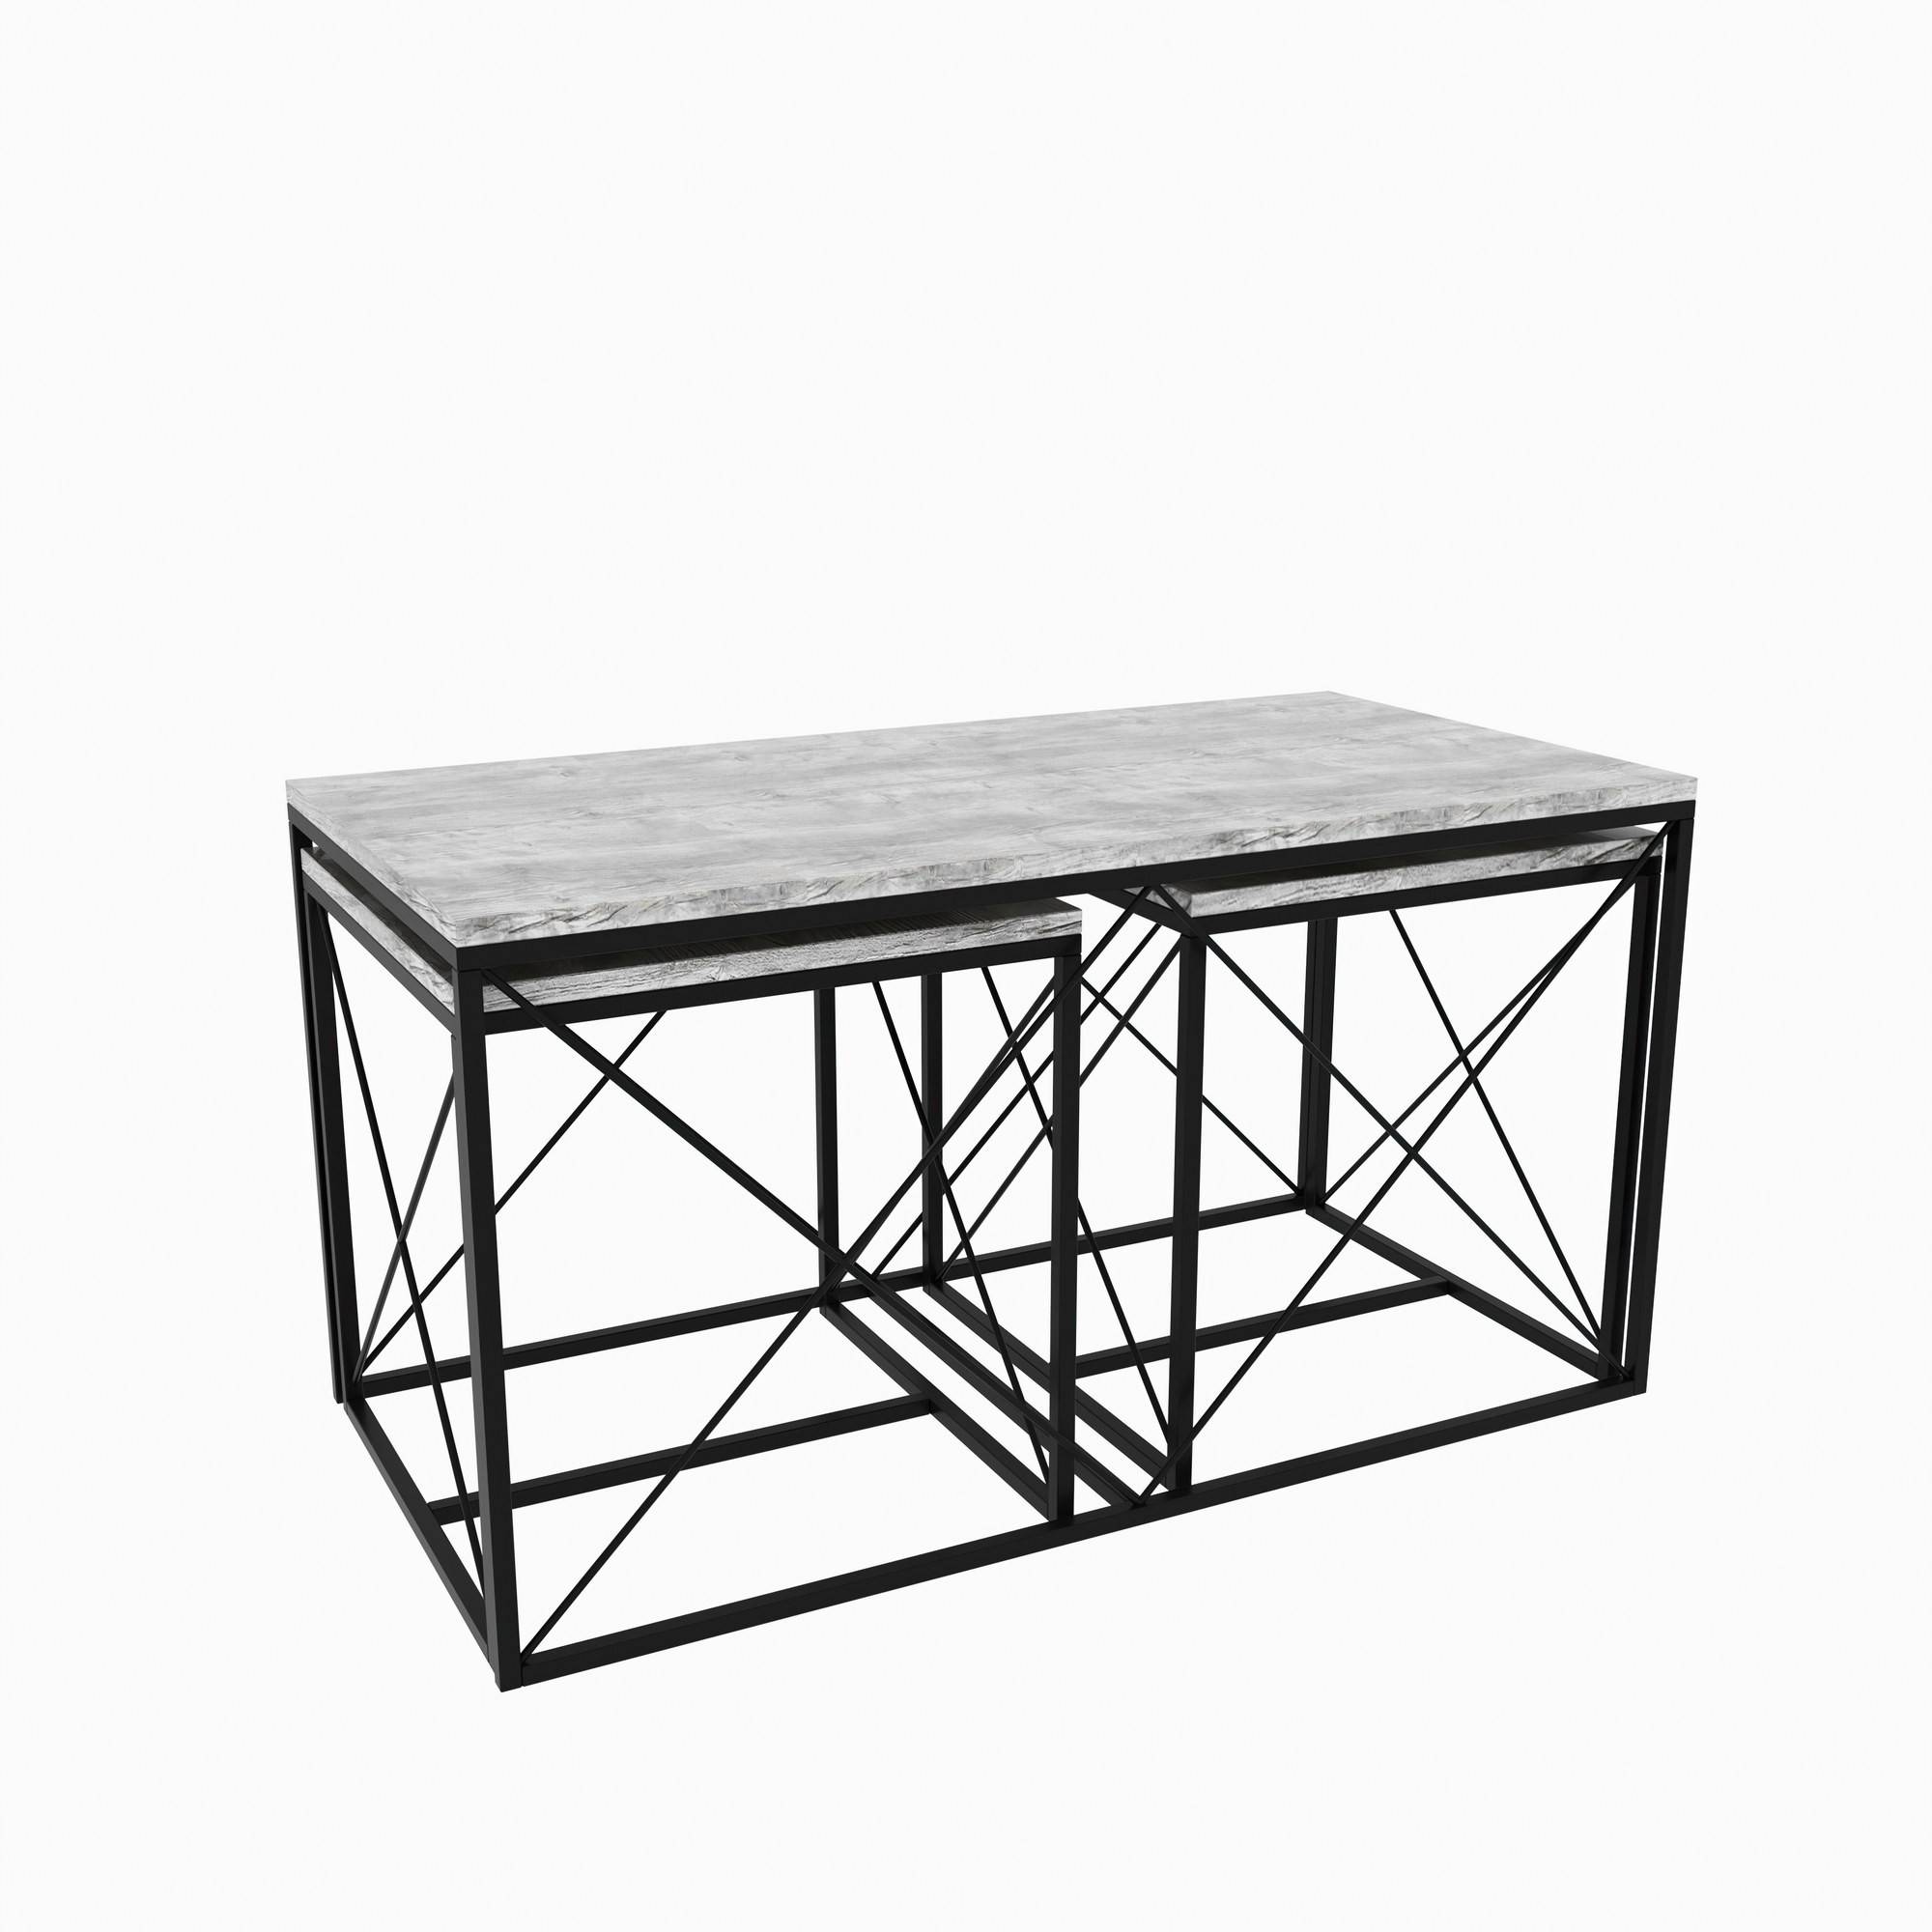 Lote de 3 mesas de centro nido Langkawa de estilo industrial en metal negro y madera gris claro